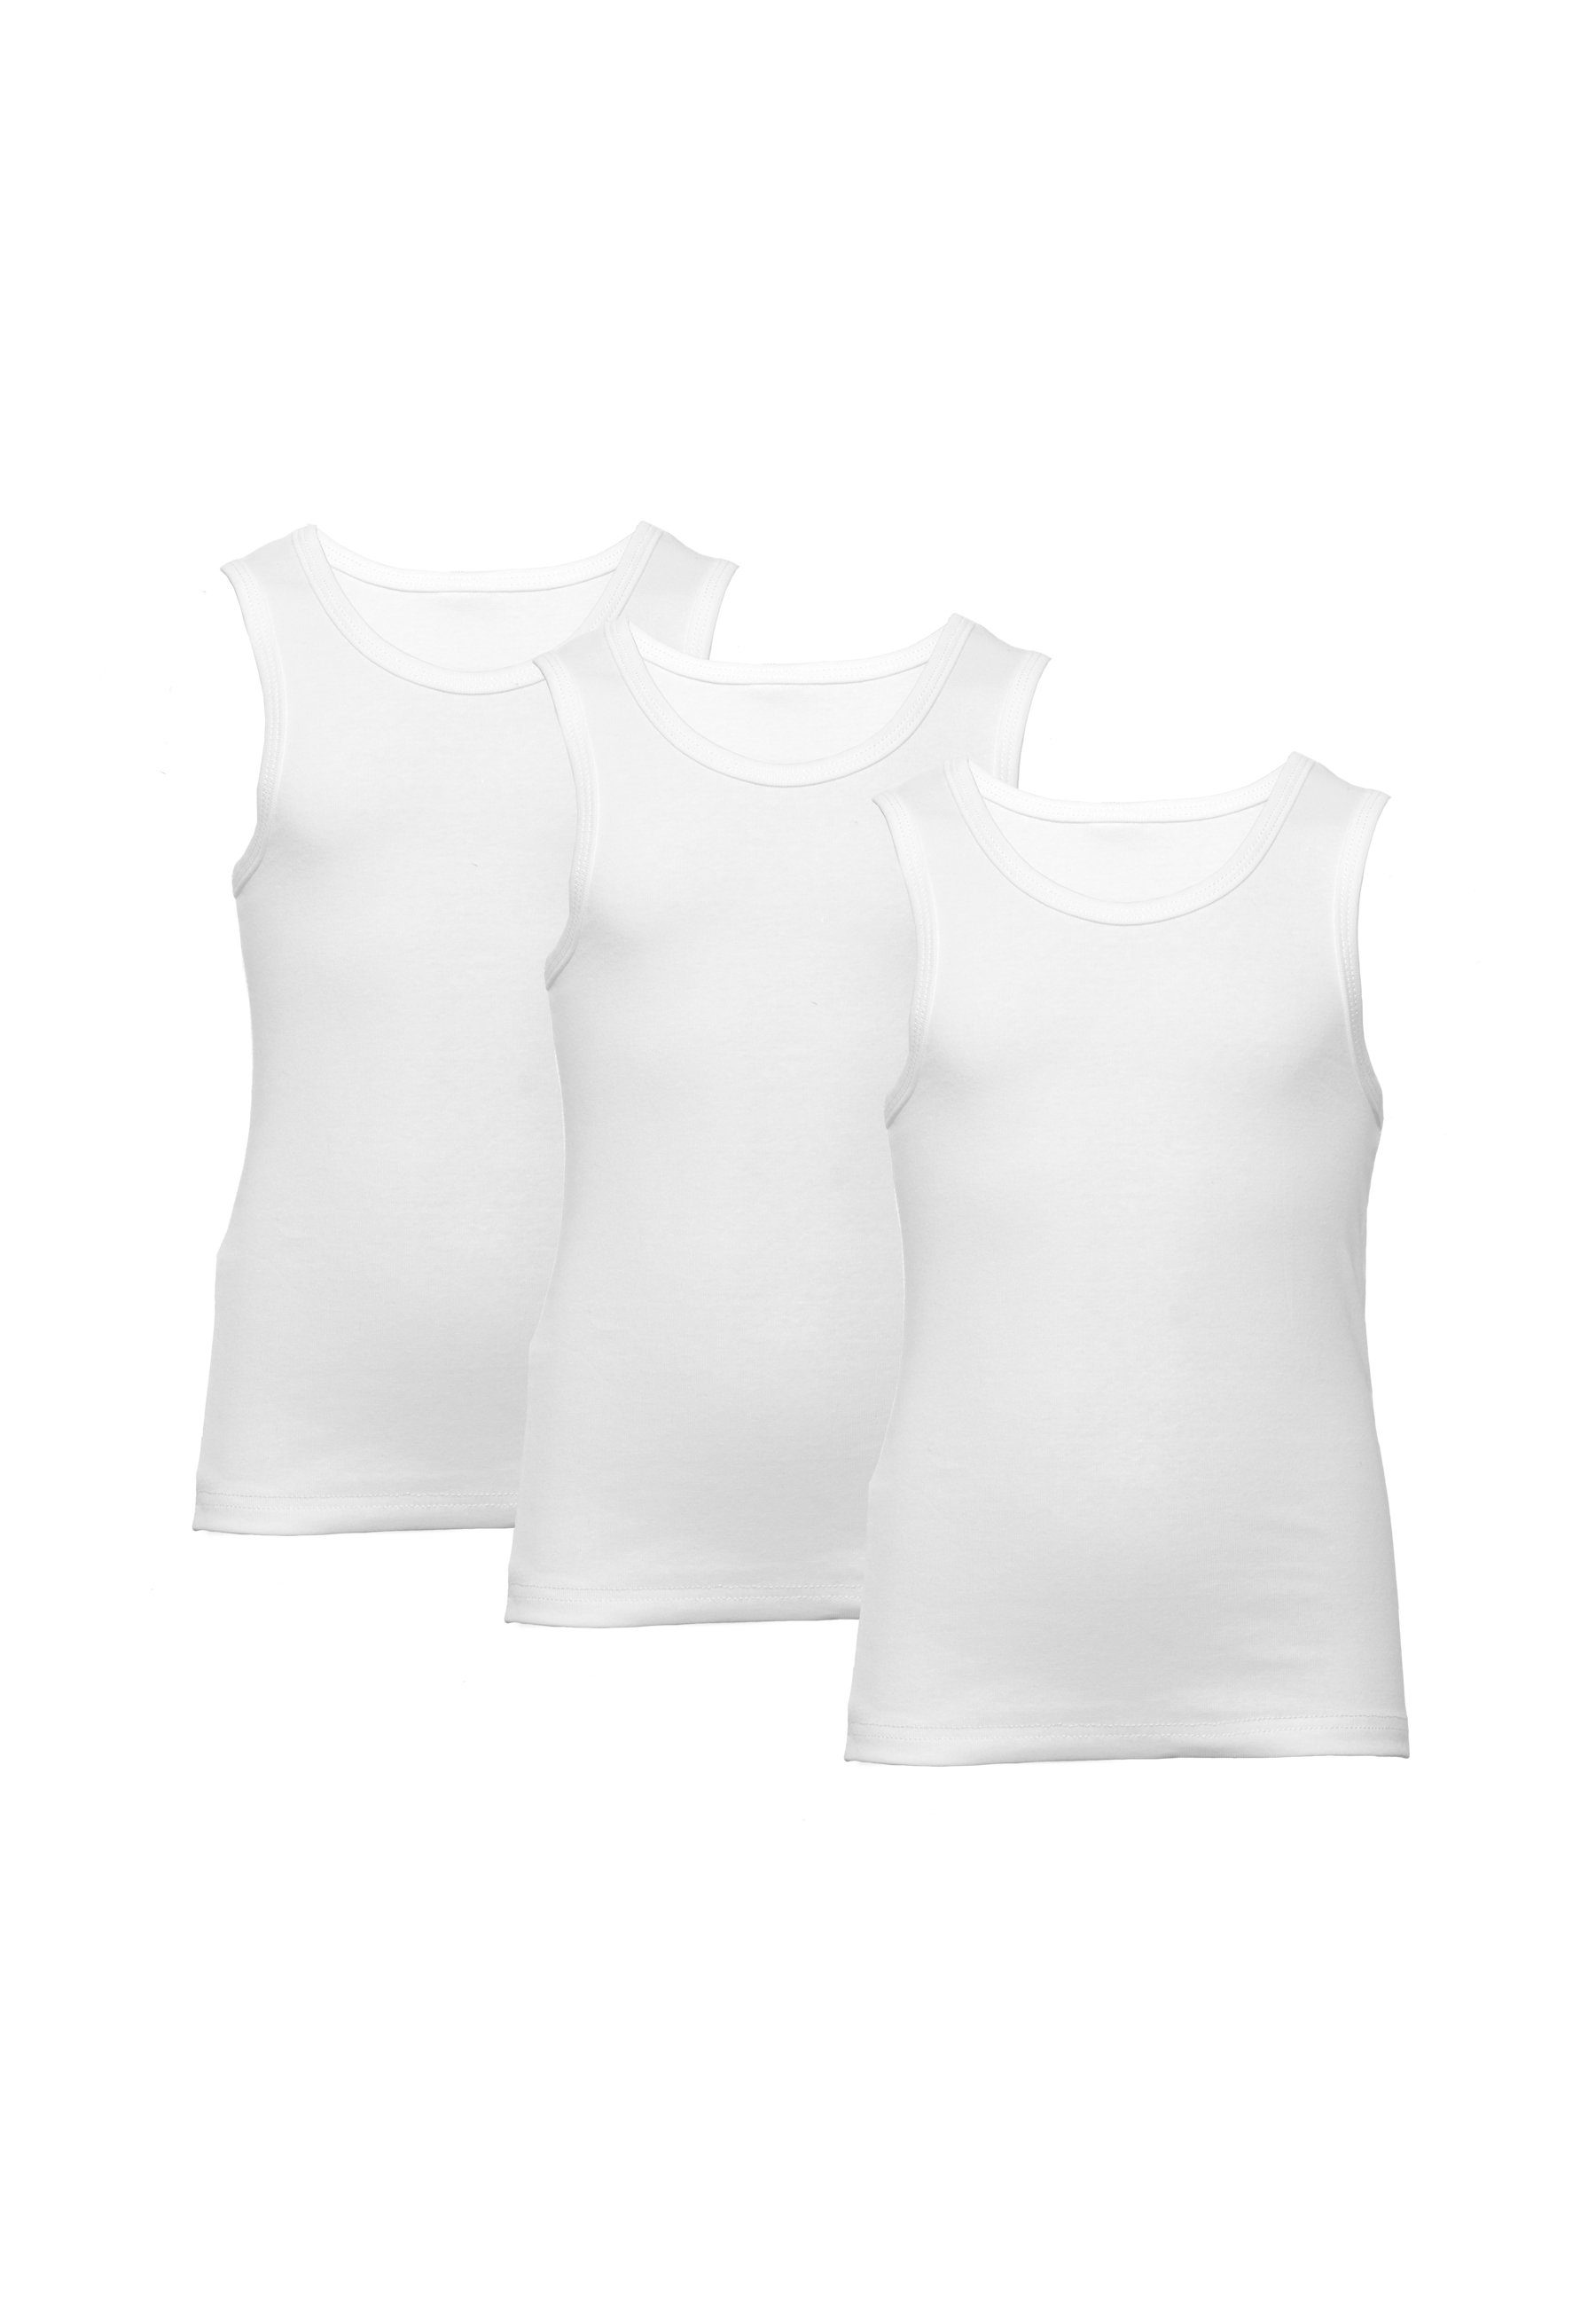 CARBURANT Unterhemd Unterhemden für Jungen, 3er-Pack, Weiß aus reiner Baumwolle